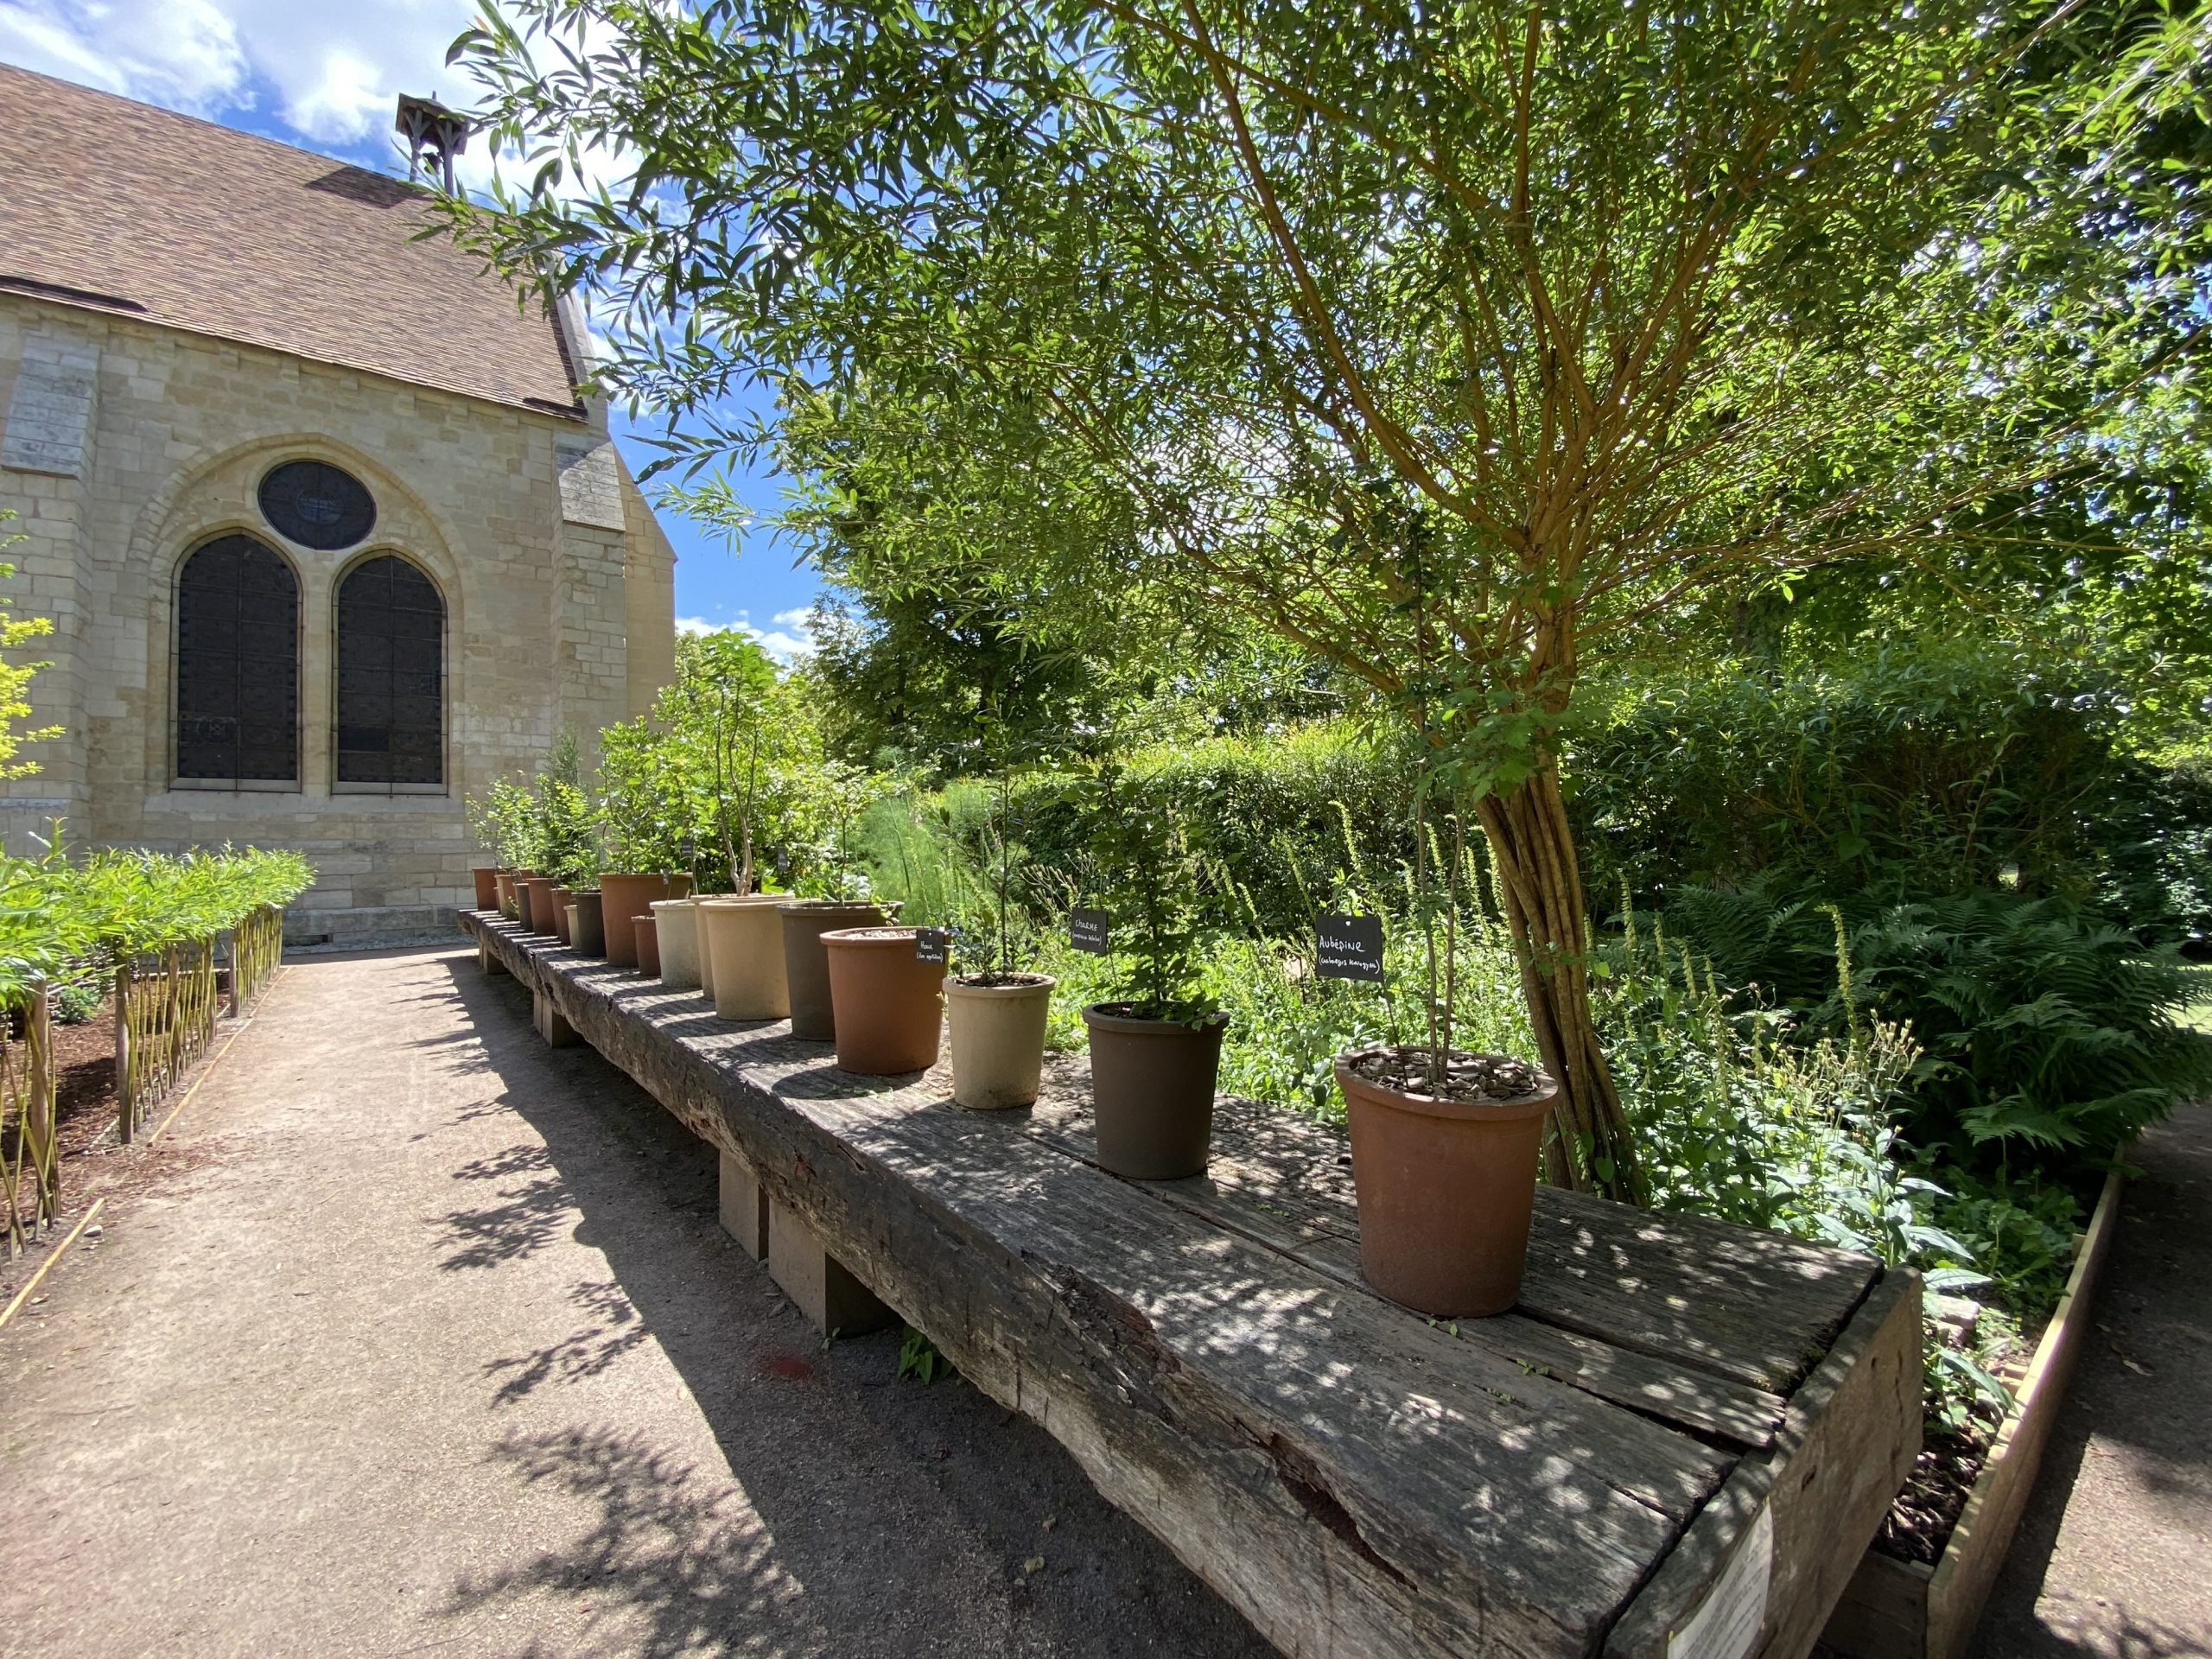 De drie tuinen van de abdij van Royaumont